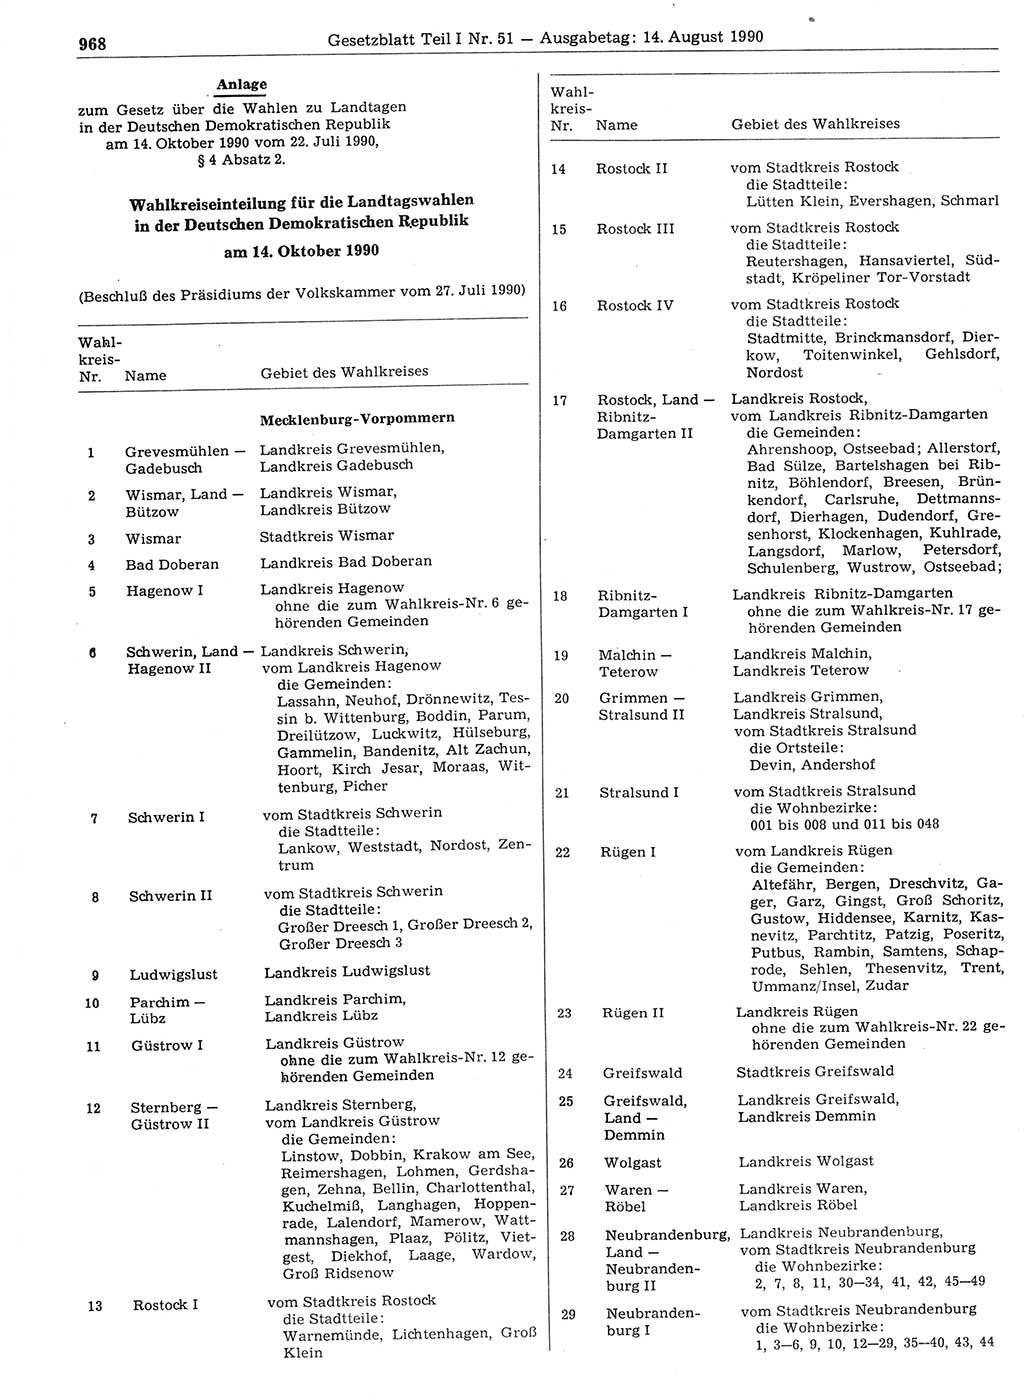 Gesetzblatt (GBl.) der Deutschen Demokratischen Republik (DDR) Teil Ⅰ 1990, Seite 968 (GBl. DDR Ⅰ 1990, S. 968)